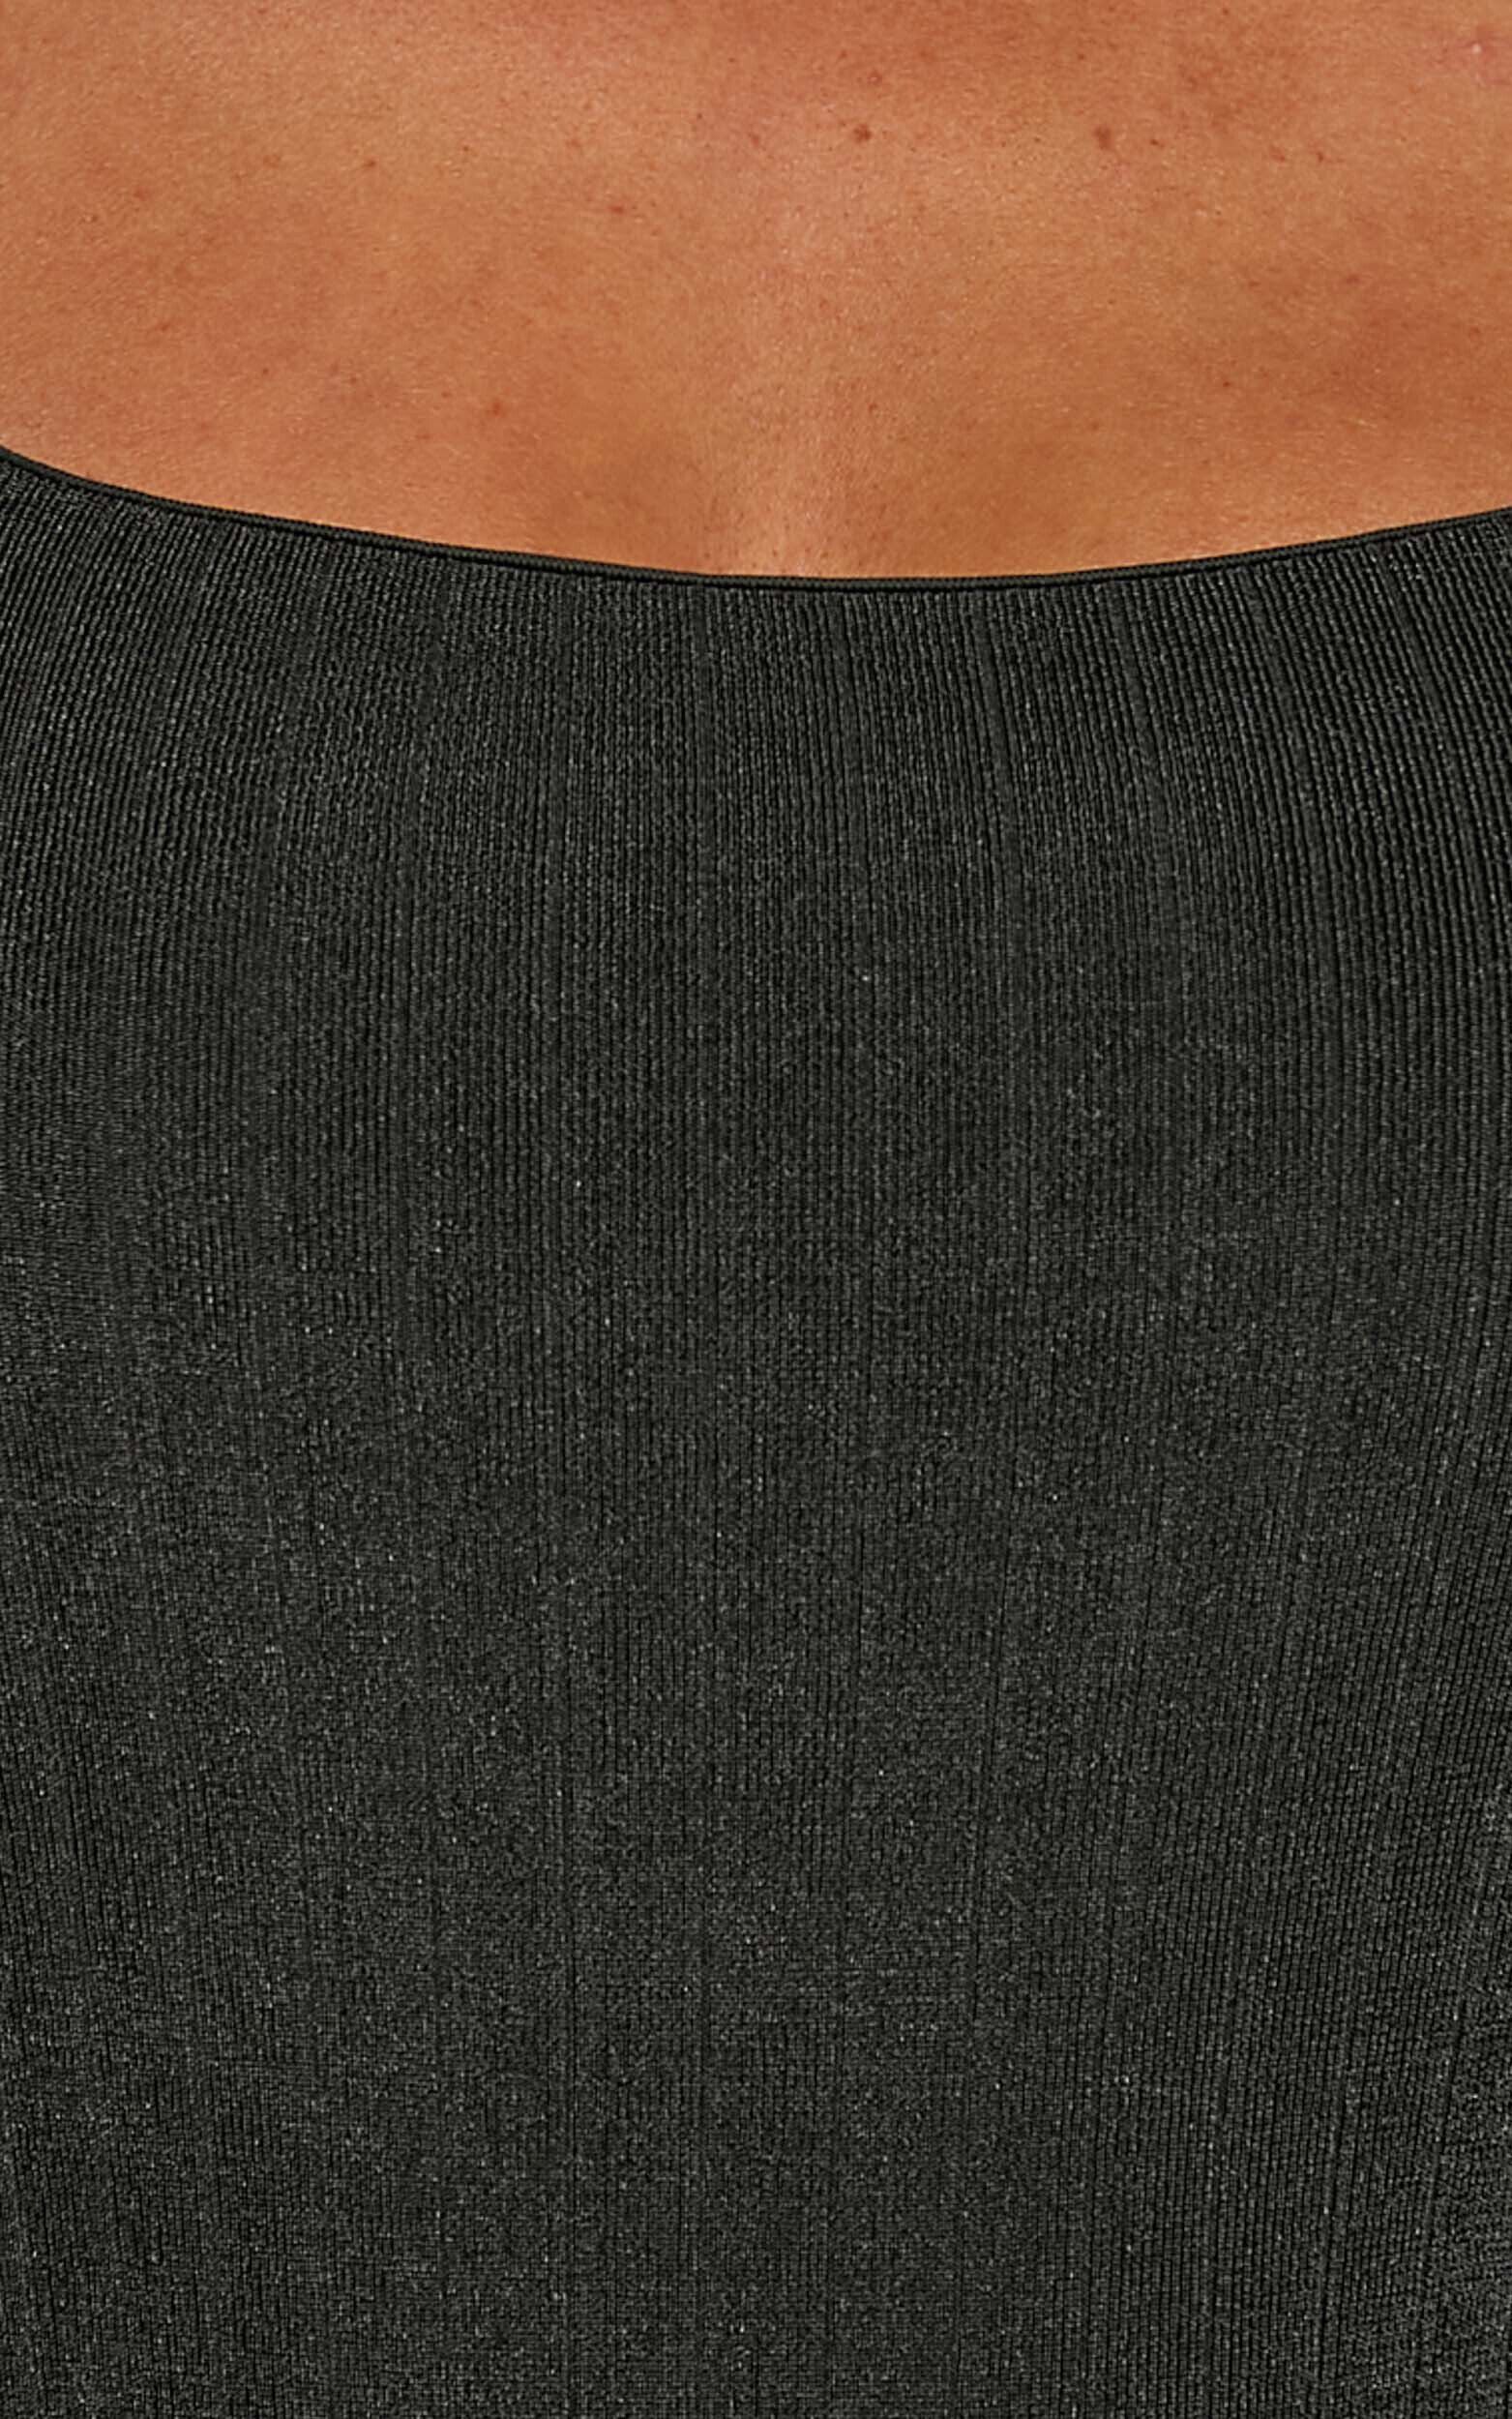 Eleonie Bodysuit - Square Neck Ribbed Bodysuit in Black | Showpo USA